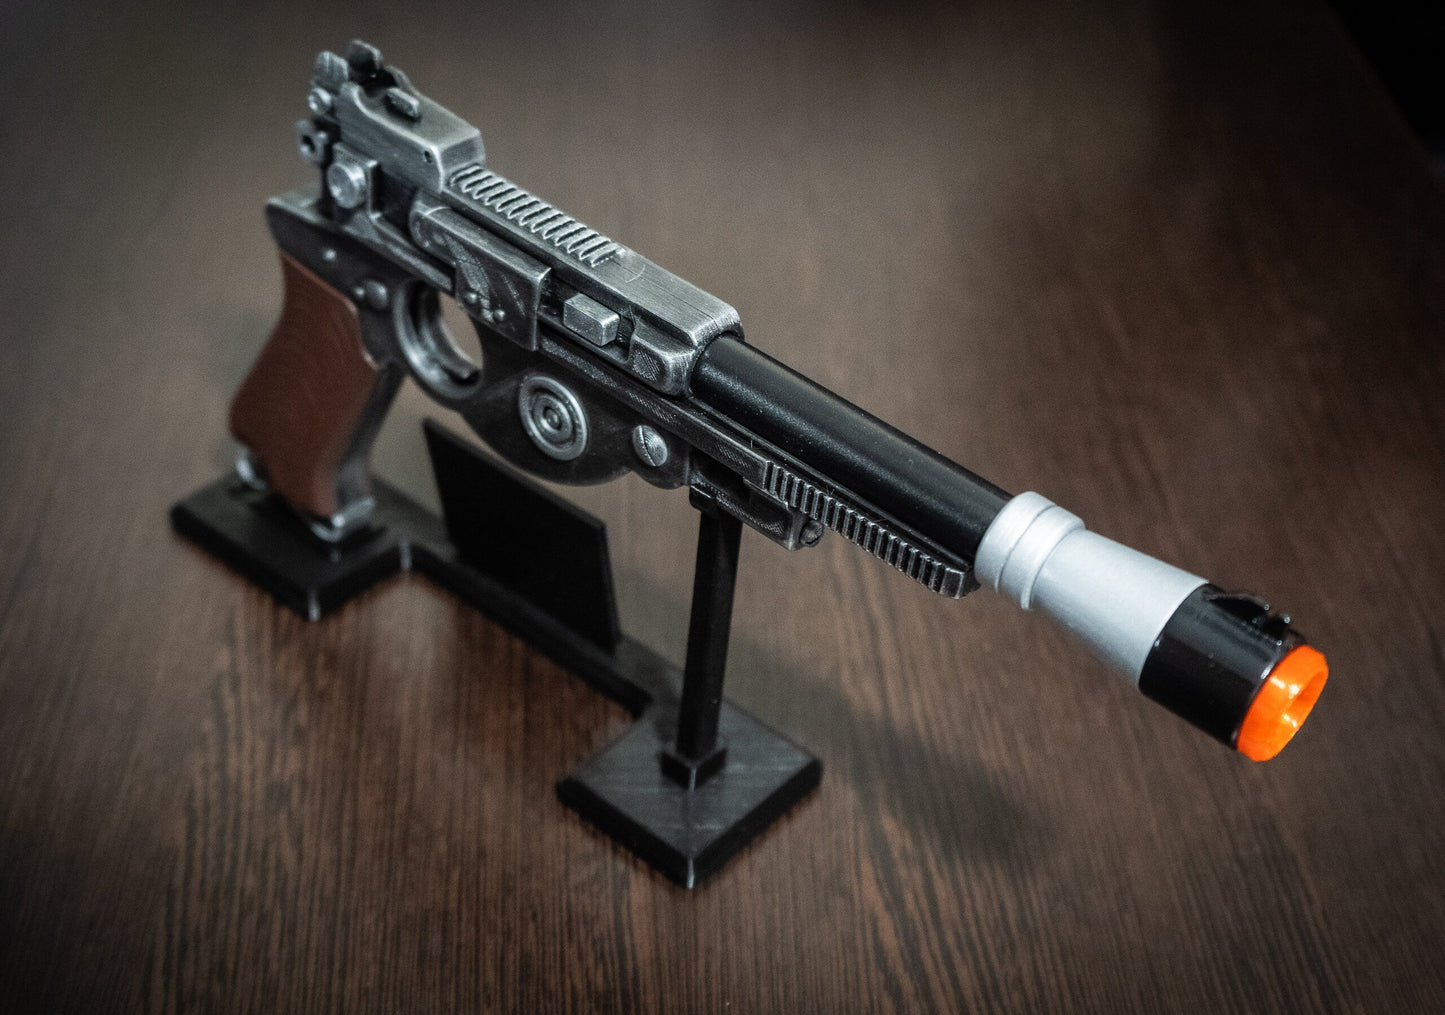 Mandalorian Blaster IB-94 Star Wars Replica | Star Wars Props | Star Wars Cosplay - 3DPrintProps